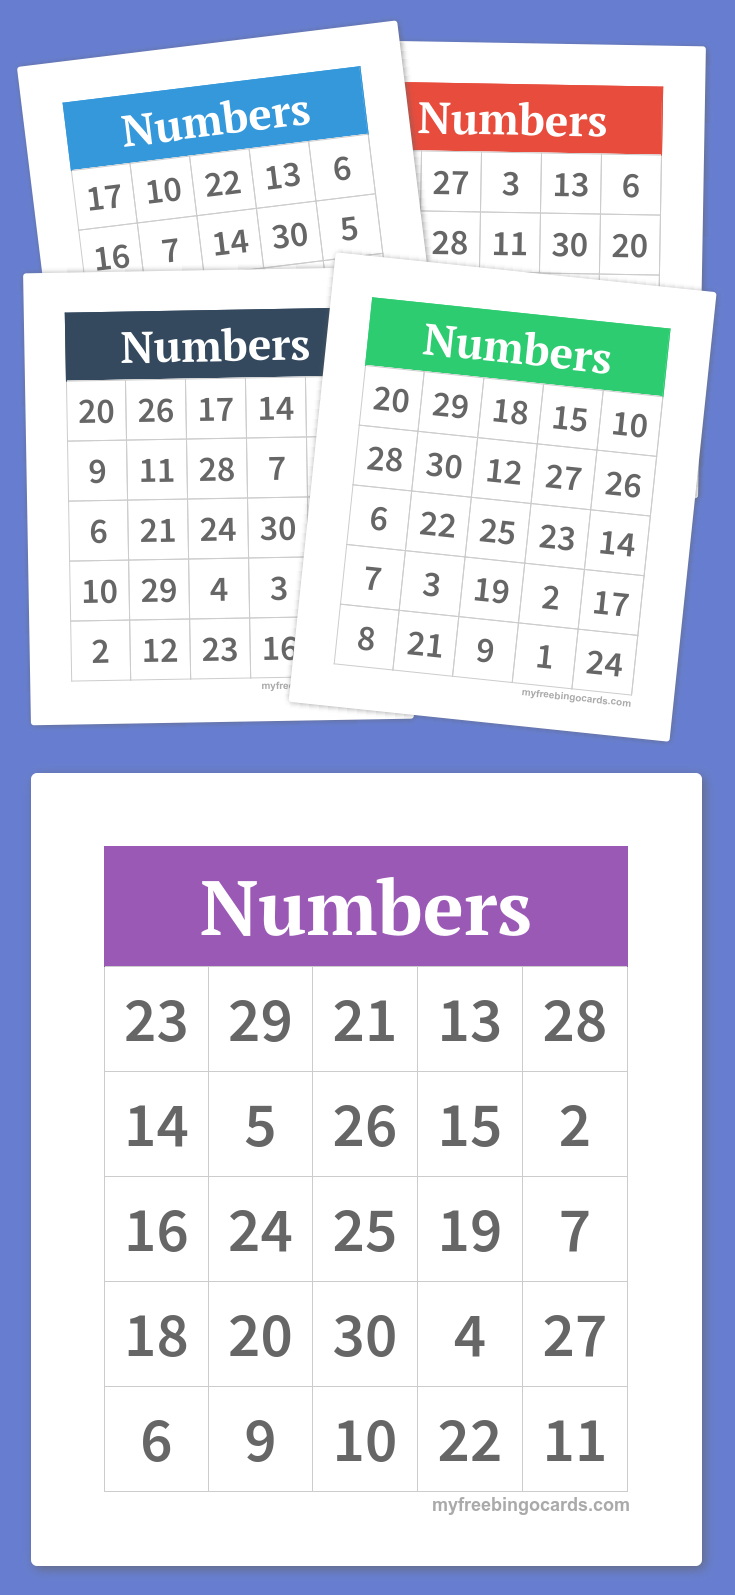 Numbers Bingo | Preschool | Bingo, Bingo Cards, Free Bingo Cards - Free Printable Bingo Cards With Numbers